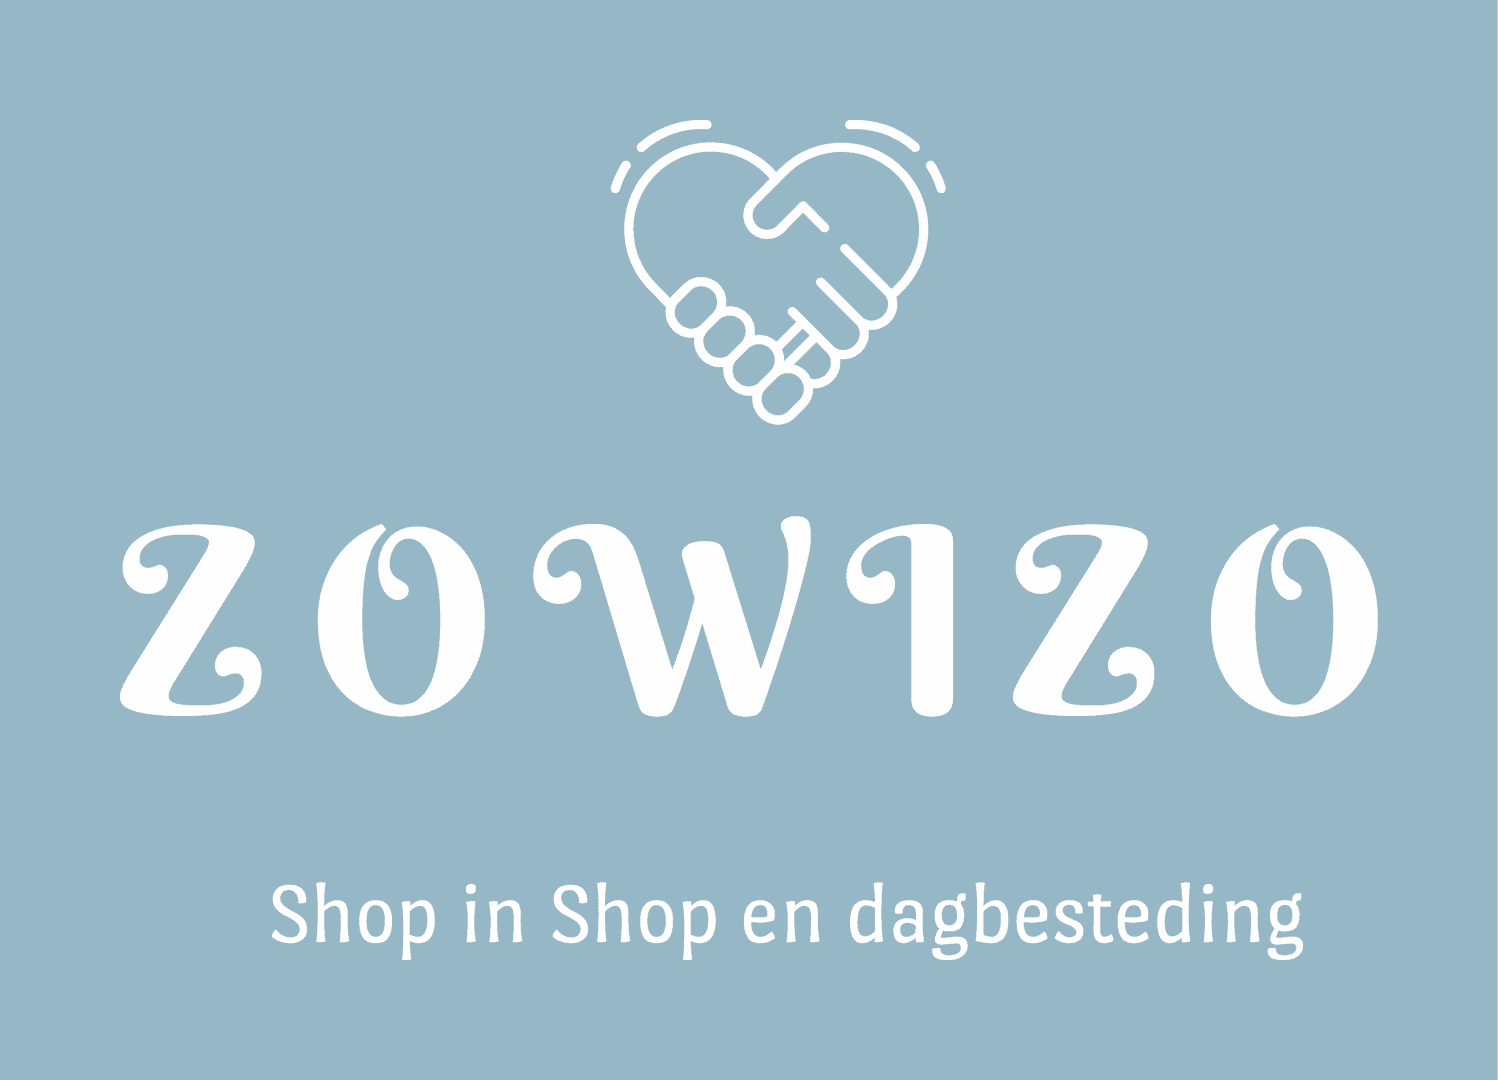 Zowizo shop in shop en dagbesteding